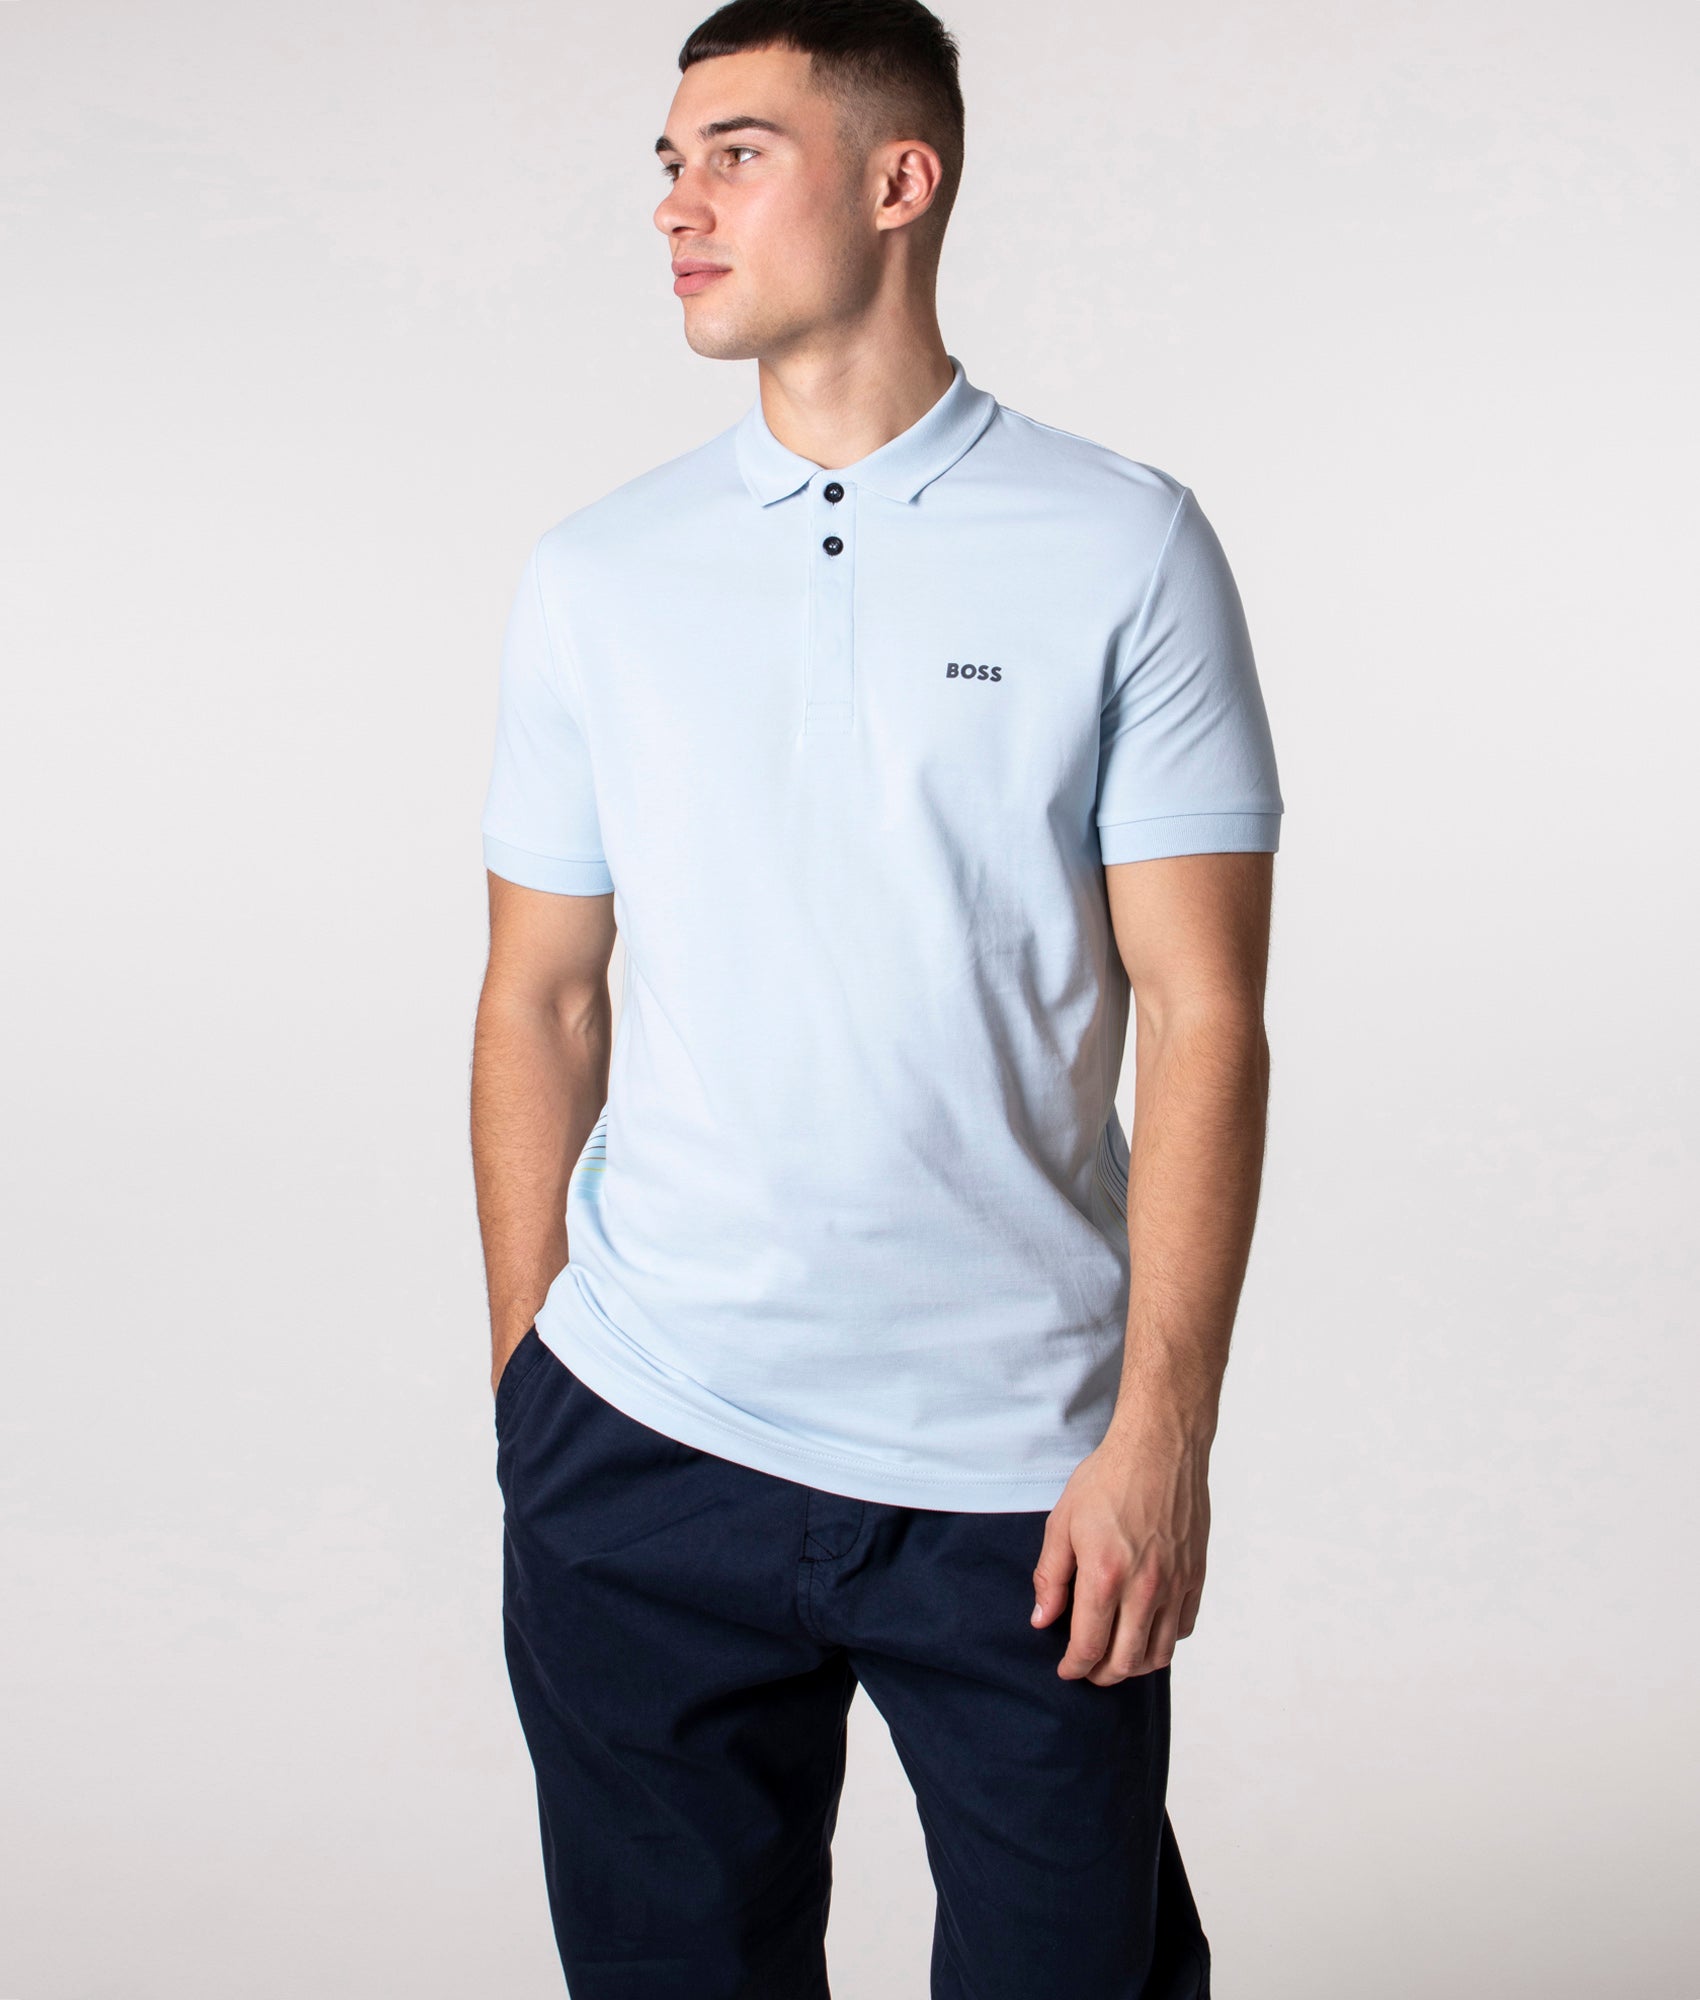 BOSS Mens Slim Fit Paule 2 Polo Shirt - Colour: 453 Light/Pastel Blue - Size: XXL